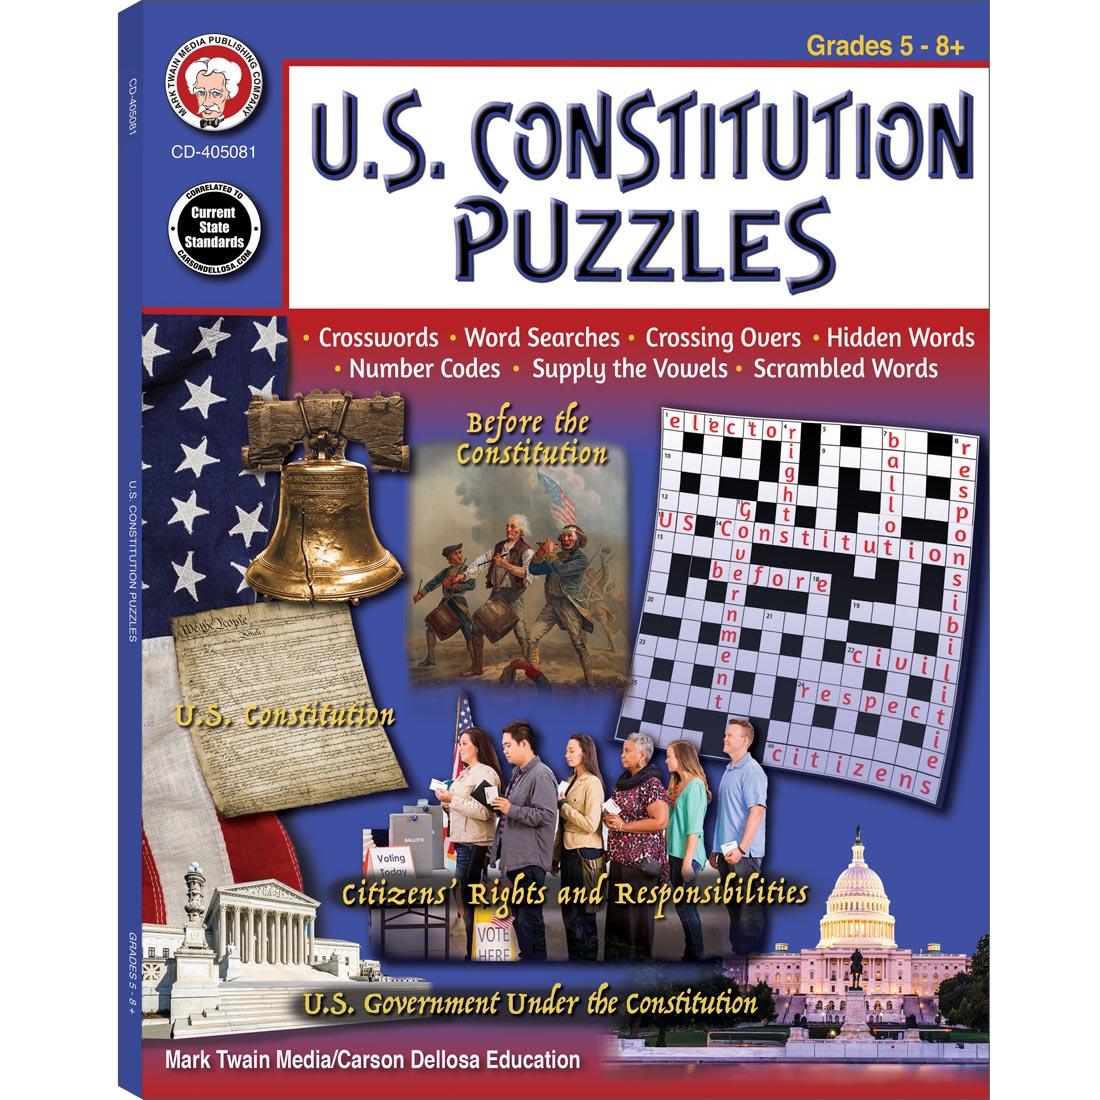 U.S. Constitution Puzzles Workbook By Carson Dellosa